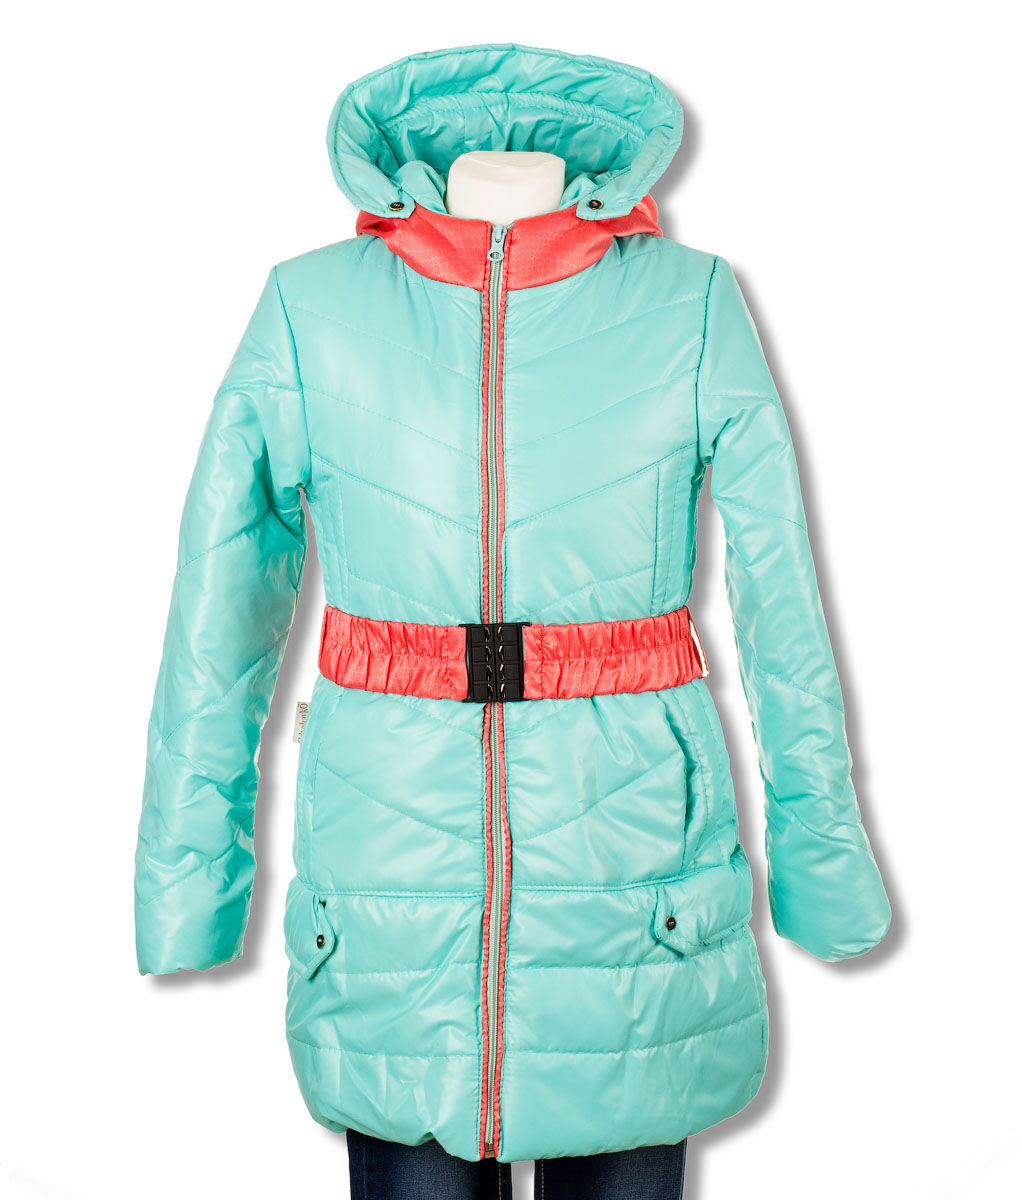 Куртка для девочки Одягайко бирюза 2706 - цена